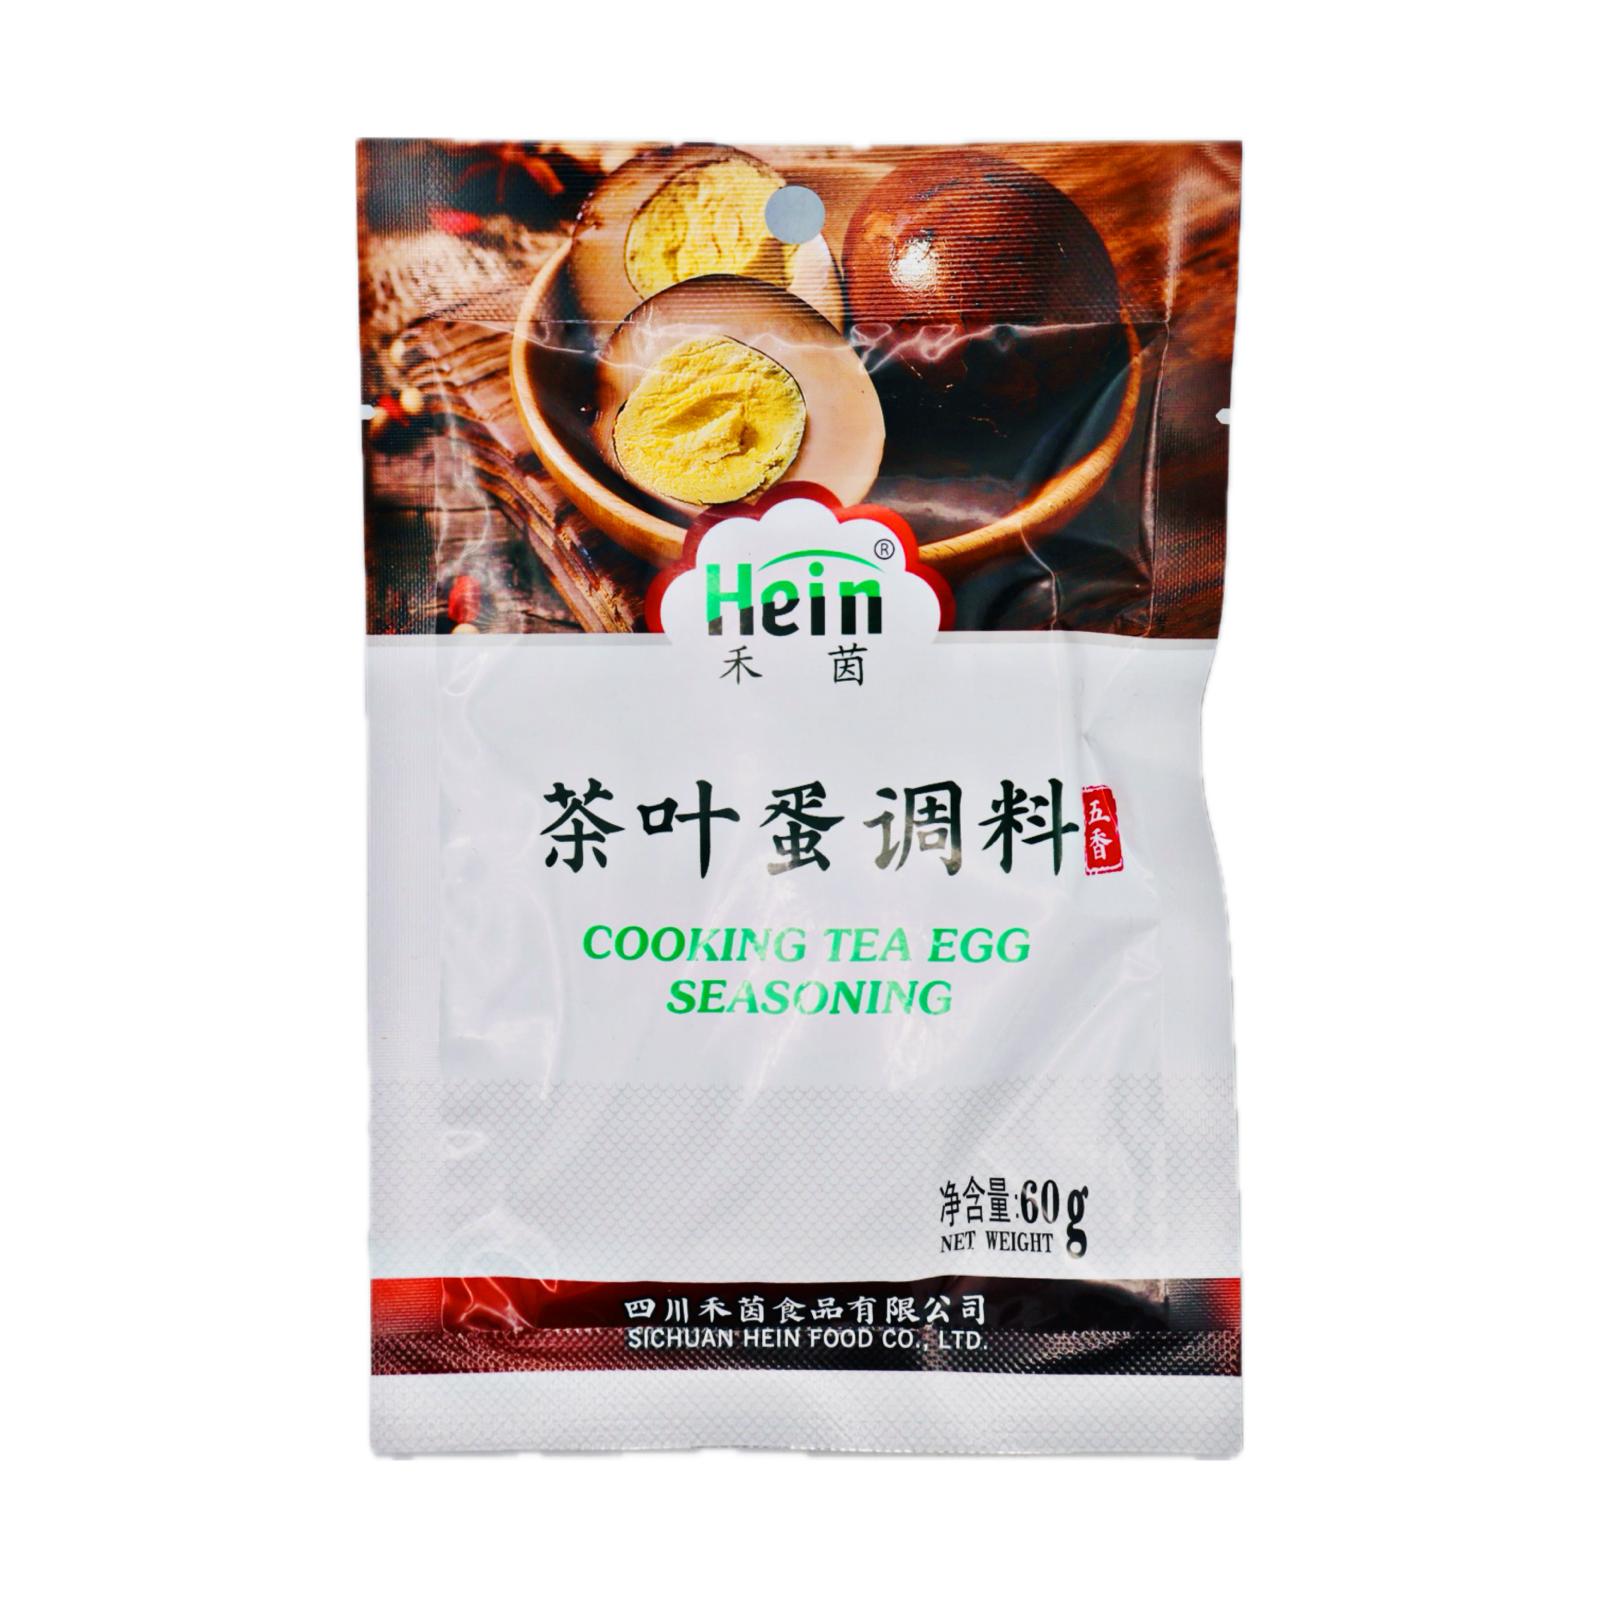 Hein Cooking Tea Egg Seasoning 禾茵牌茶葉蛋調料 60g